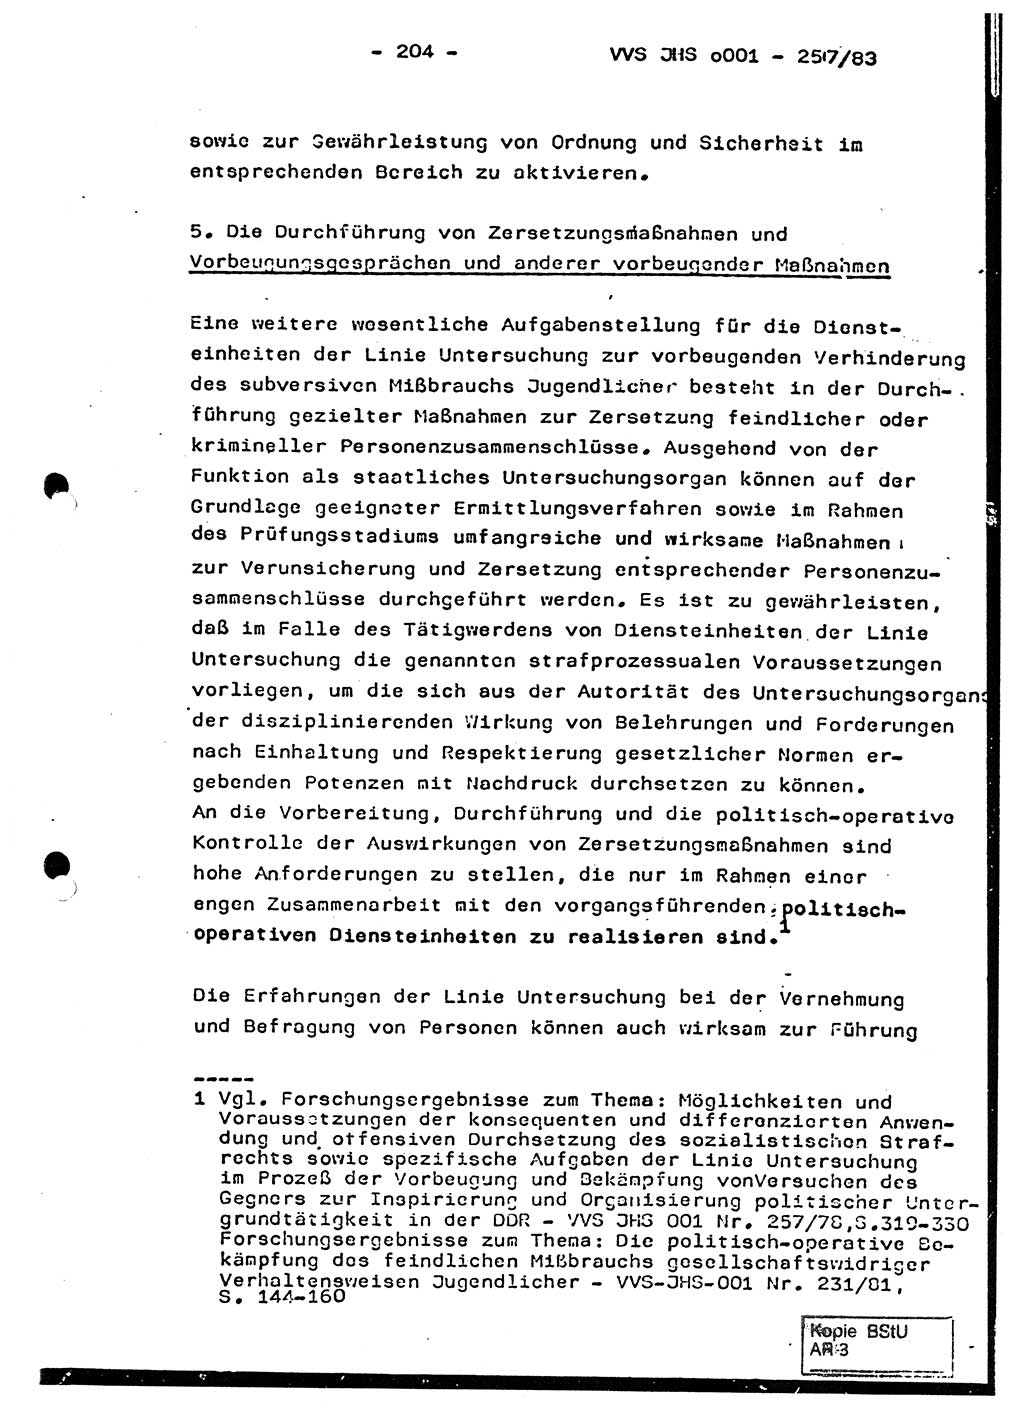 Dissertation, Oberst Helmut Lubas (BV Mdg.), Oberstleutnant Manfred Eschberger (HA IX), Oberleutnant Hans-Jürgen Ludwig (JHS), Ministerium für Staatssicherheit (MfS) [Deutsche Demokratische Republik (DDR)], Juristische Hochschule (JHS), Vertrauliche Verschlußsache (VVS) o001-257/83, Potsdam 1983, Seite 204 (Diss. MfS DDR JHS VVS o001-257/83 1983, S. 204)